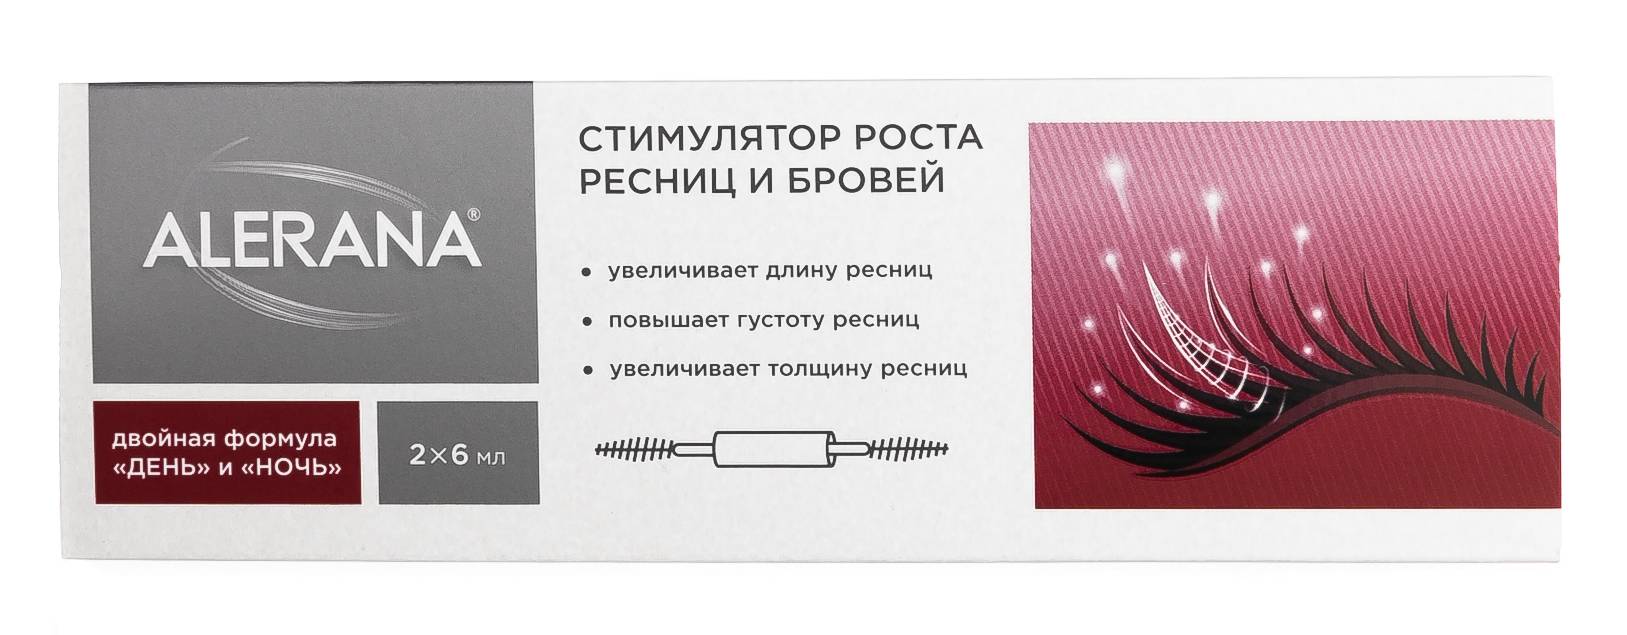 Как обрести густые ресницы – преимущества и недостатки средств для роста ресниц | портал 1nep.ru